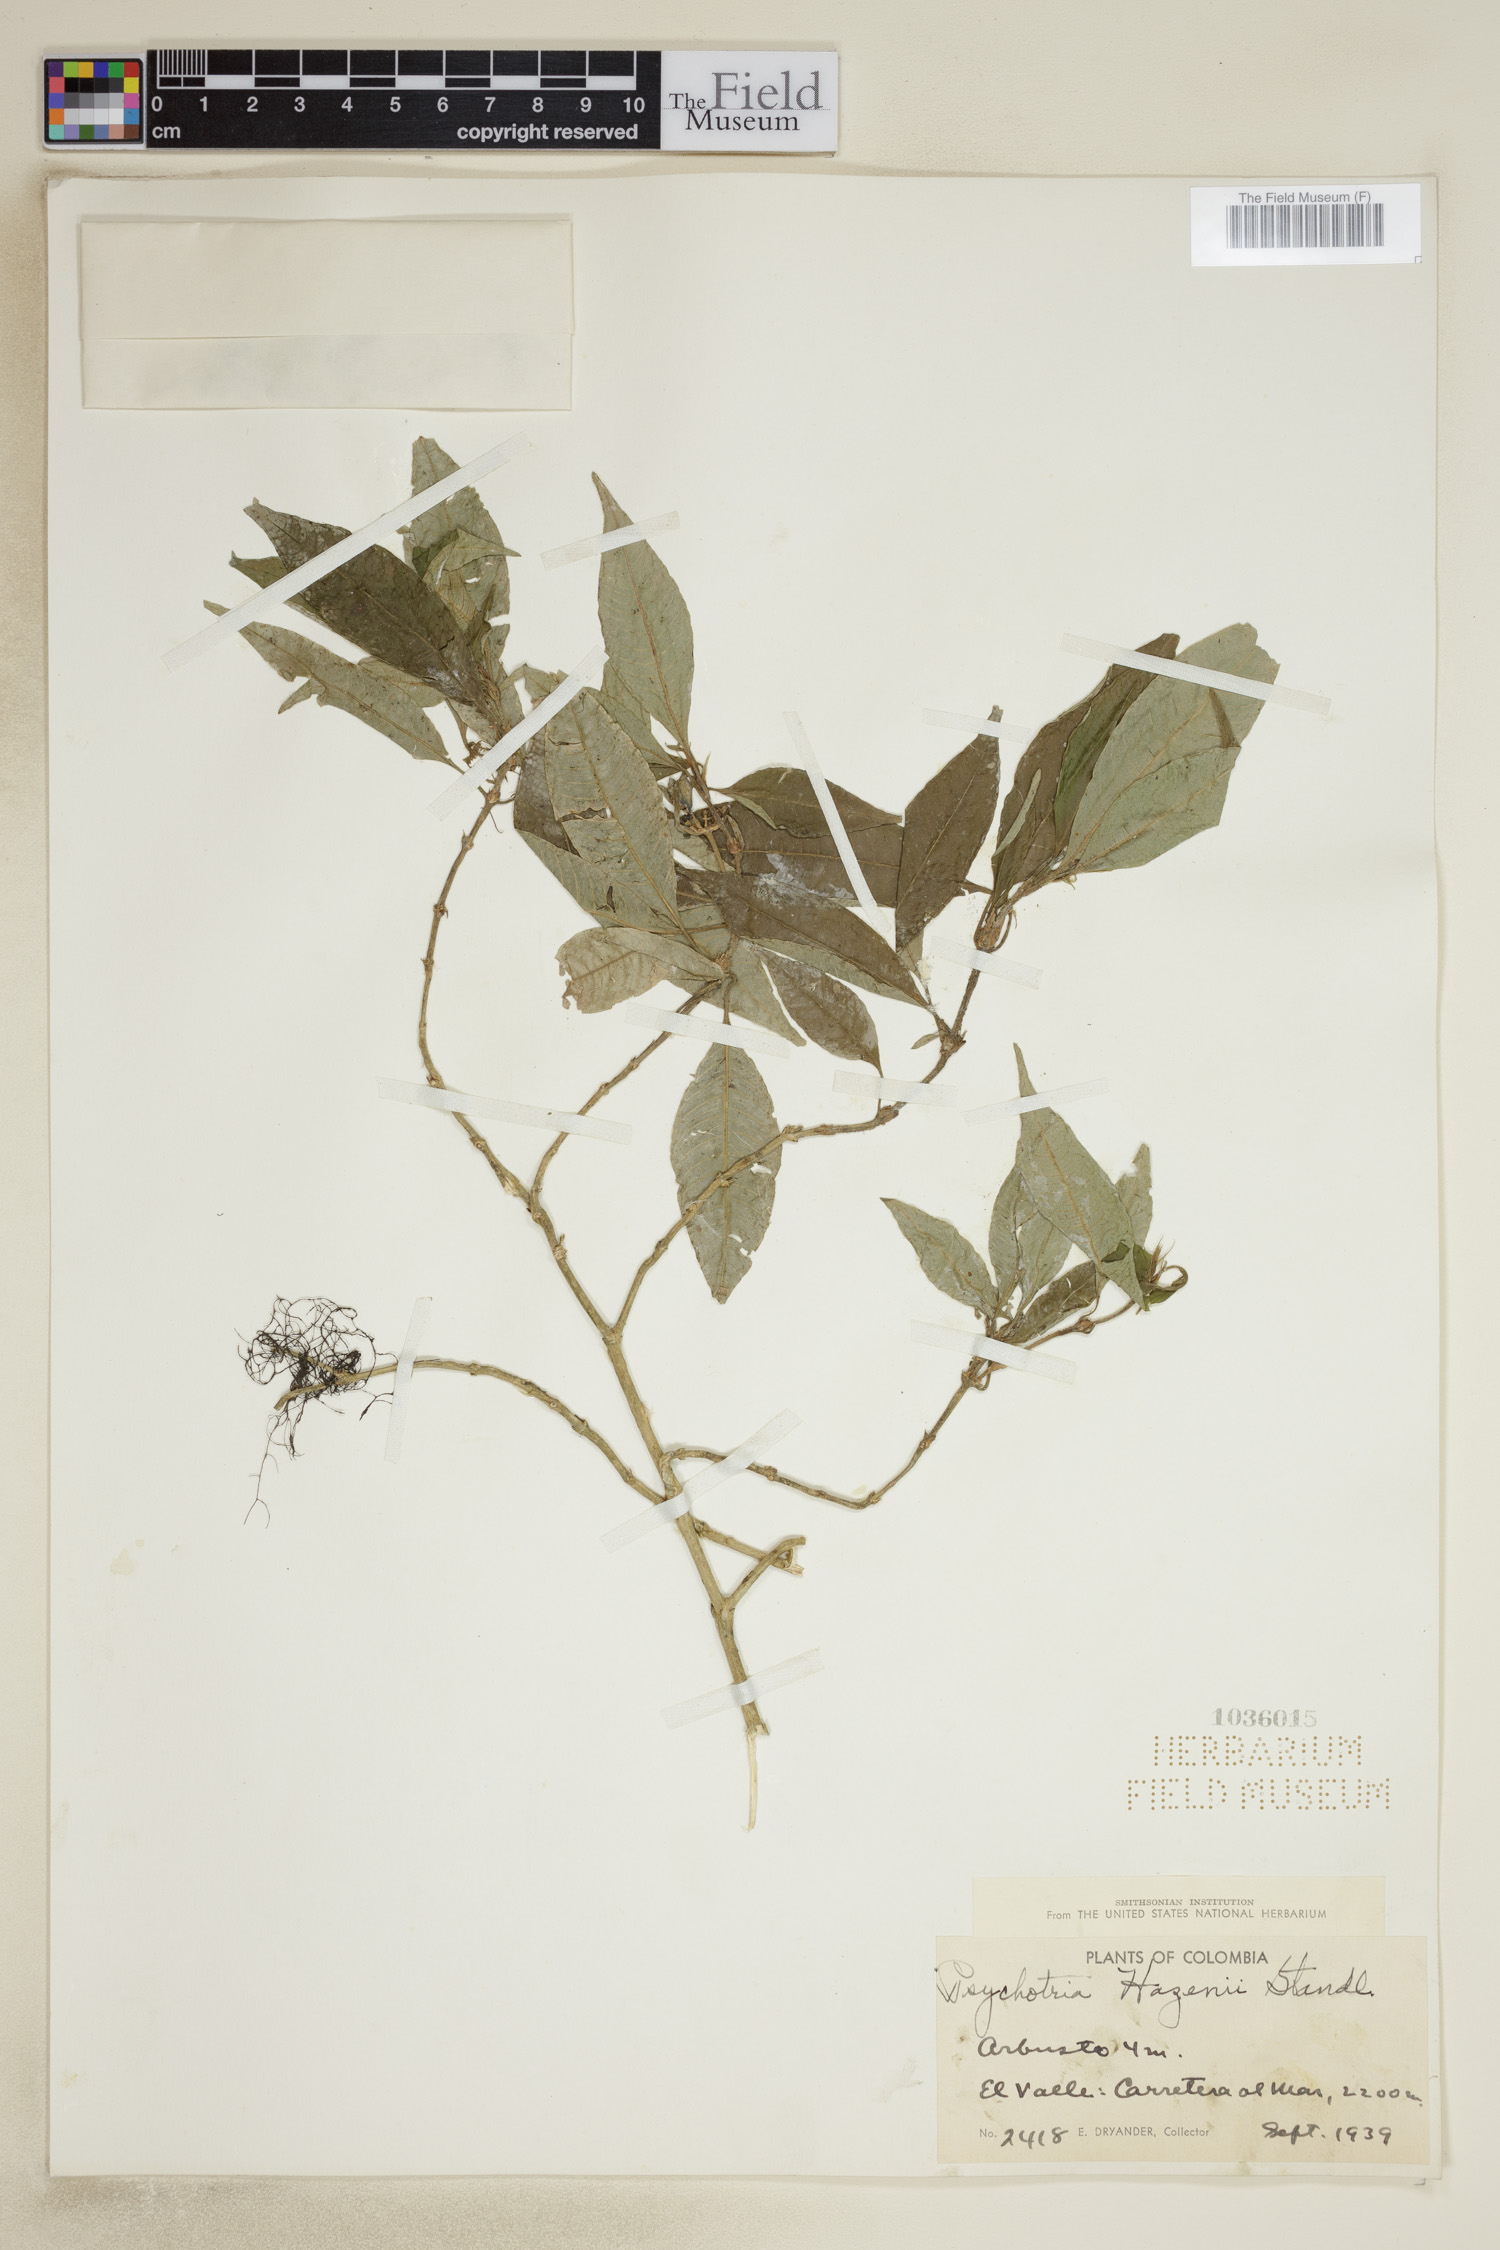 Psychotria hazenii image